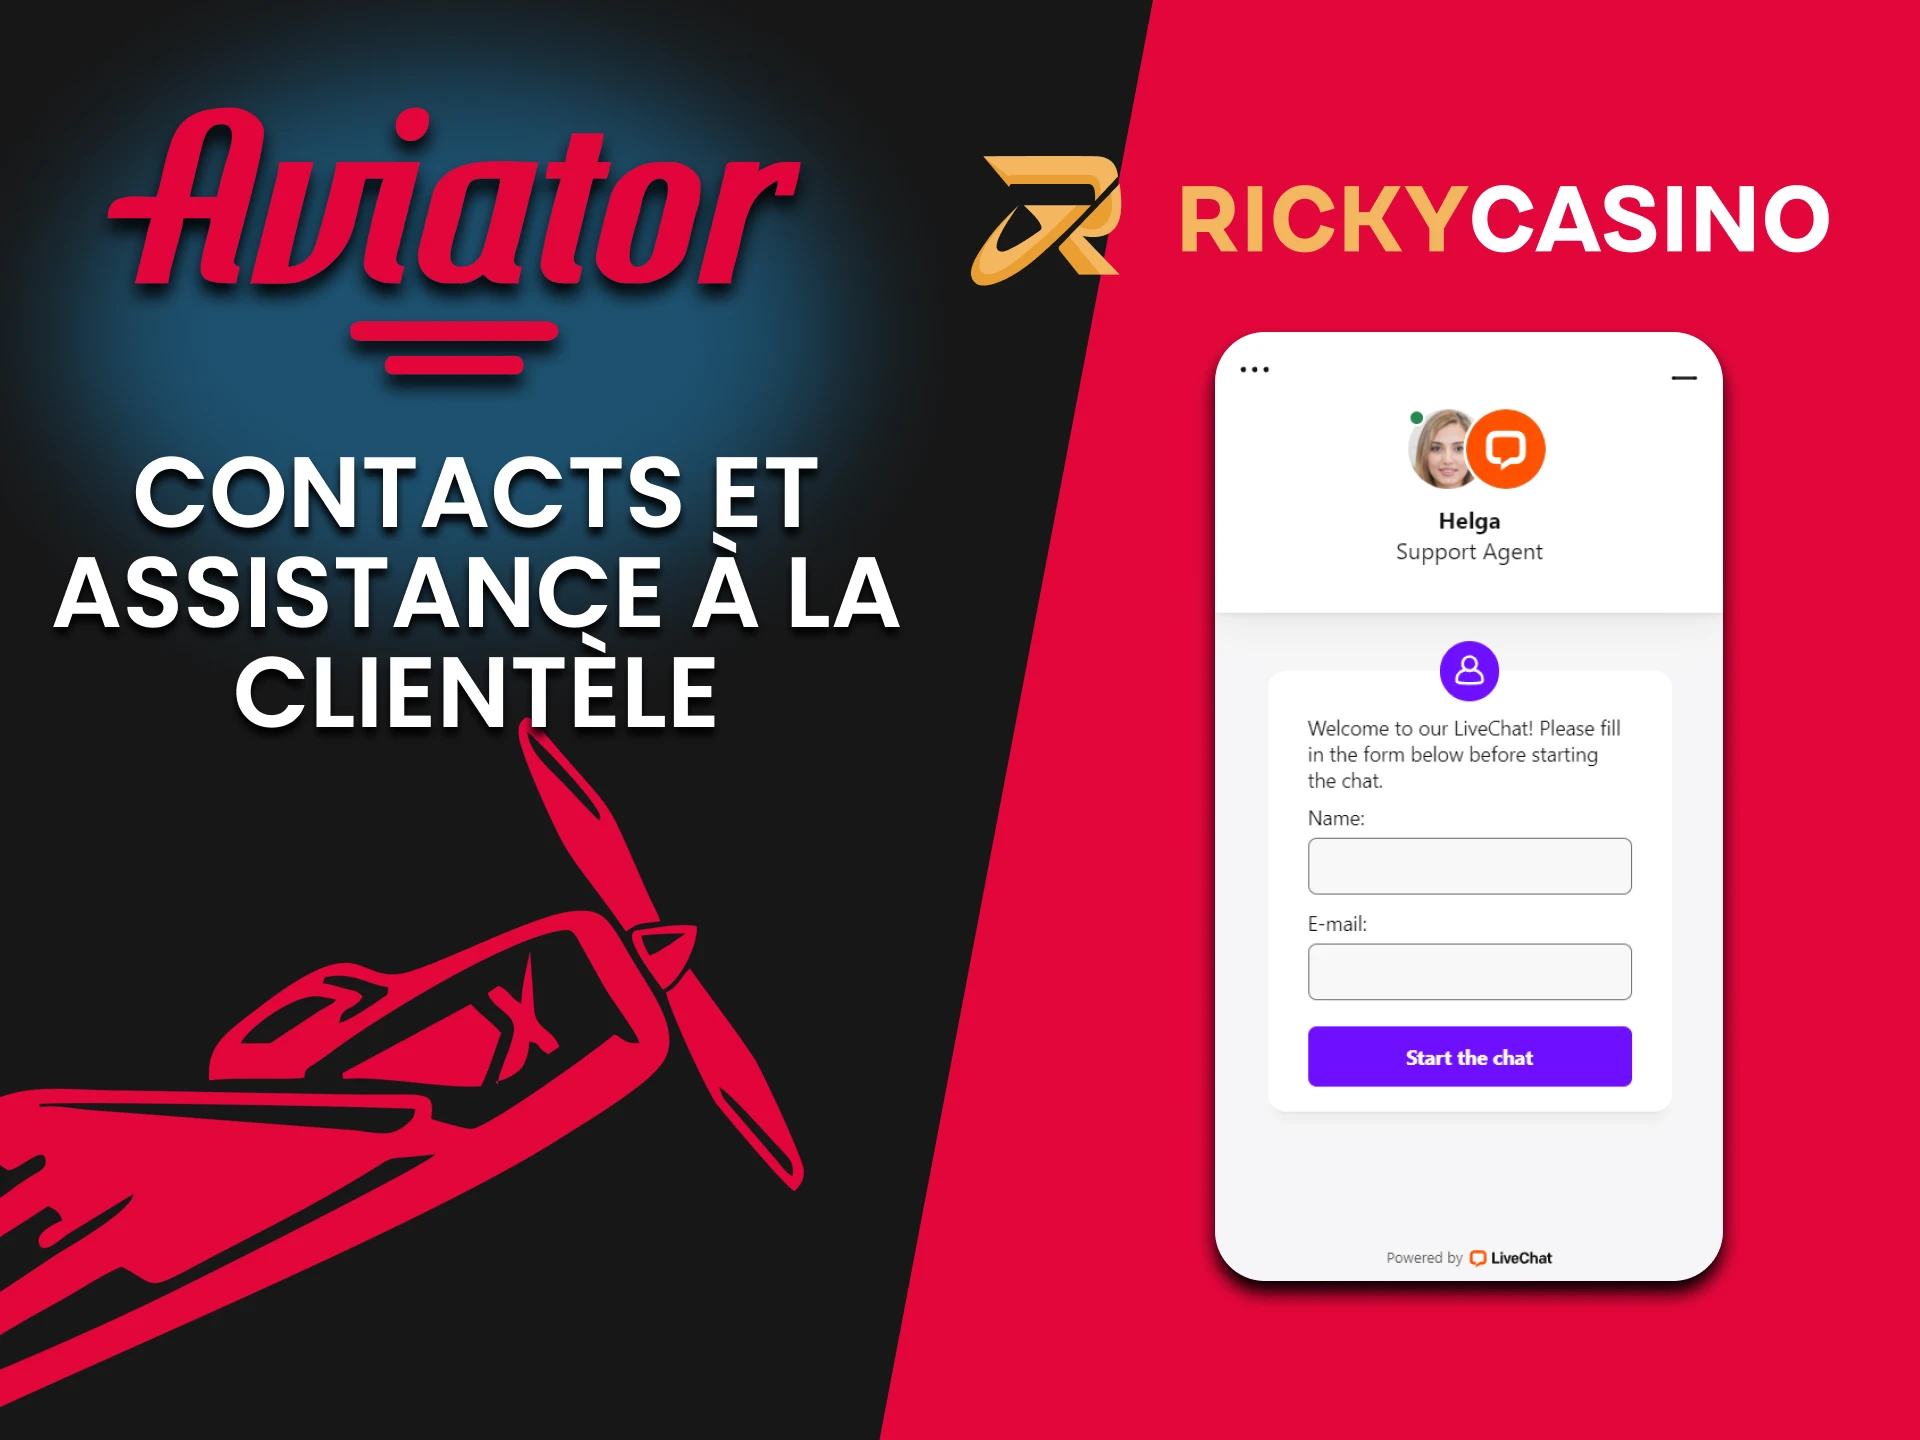 Le site Web de Ricky Casino propose un chat en direct pour les joueurs d'Aviator.